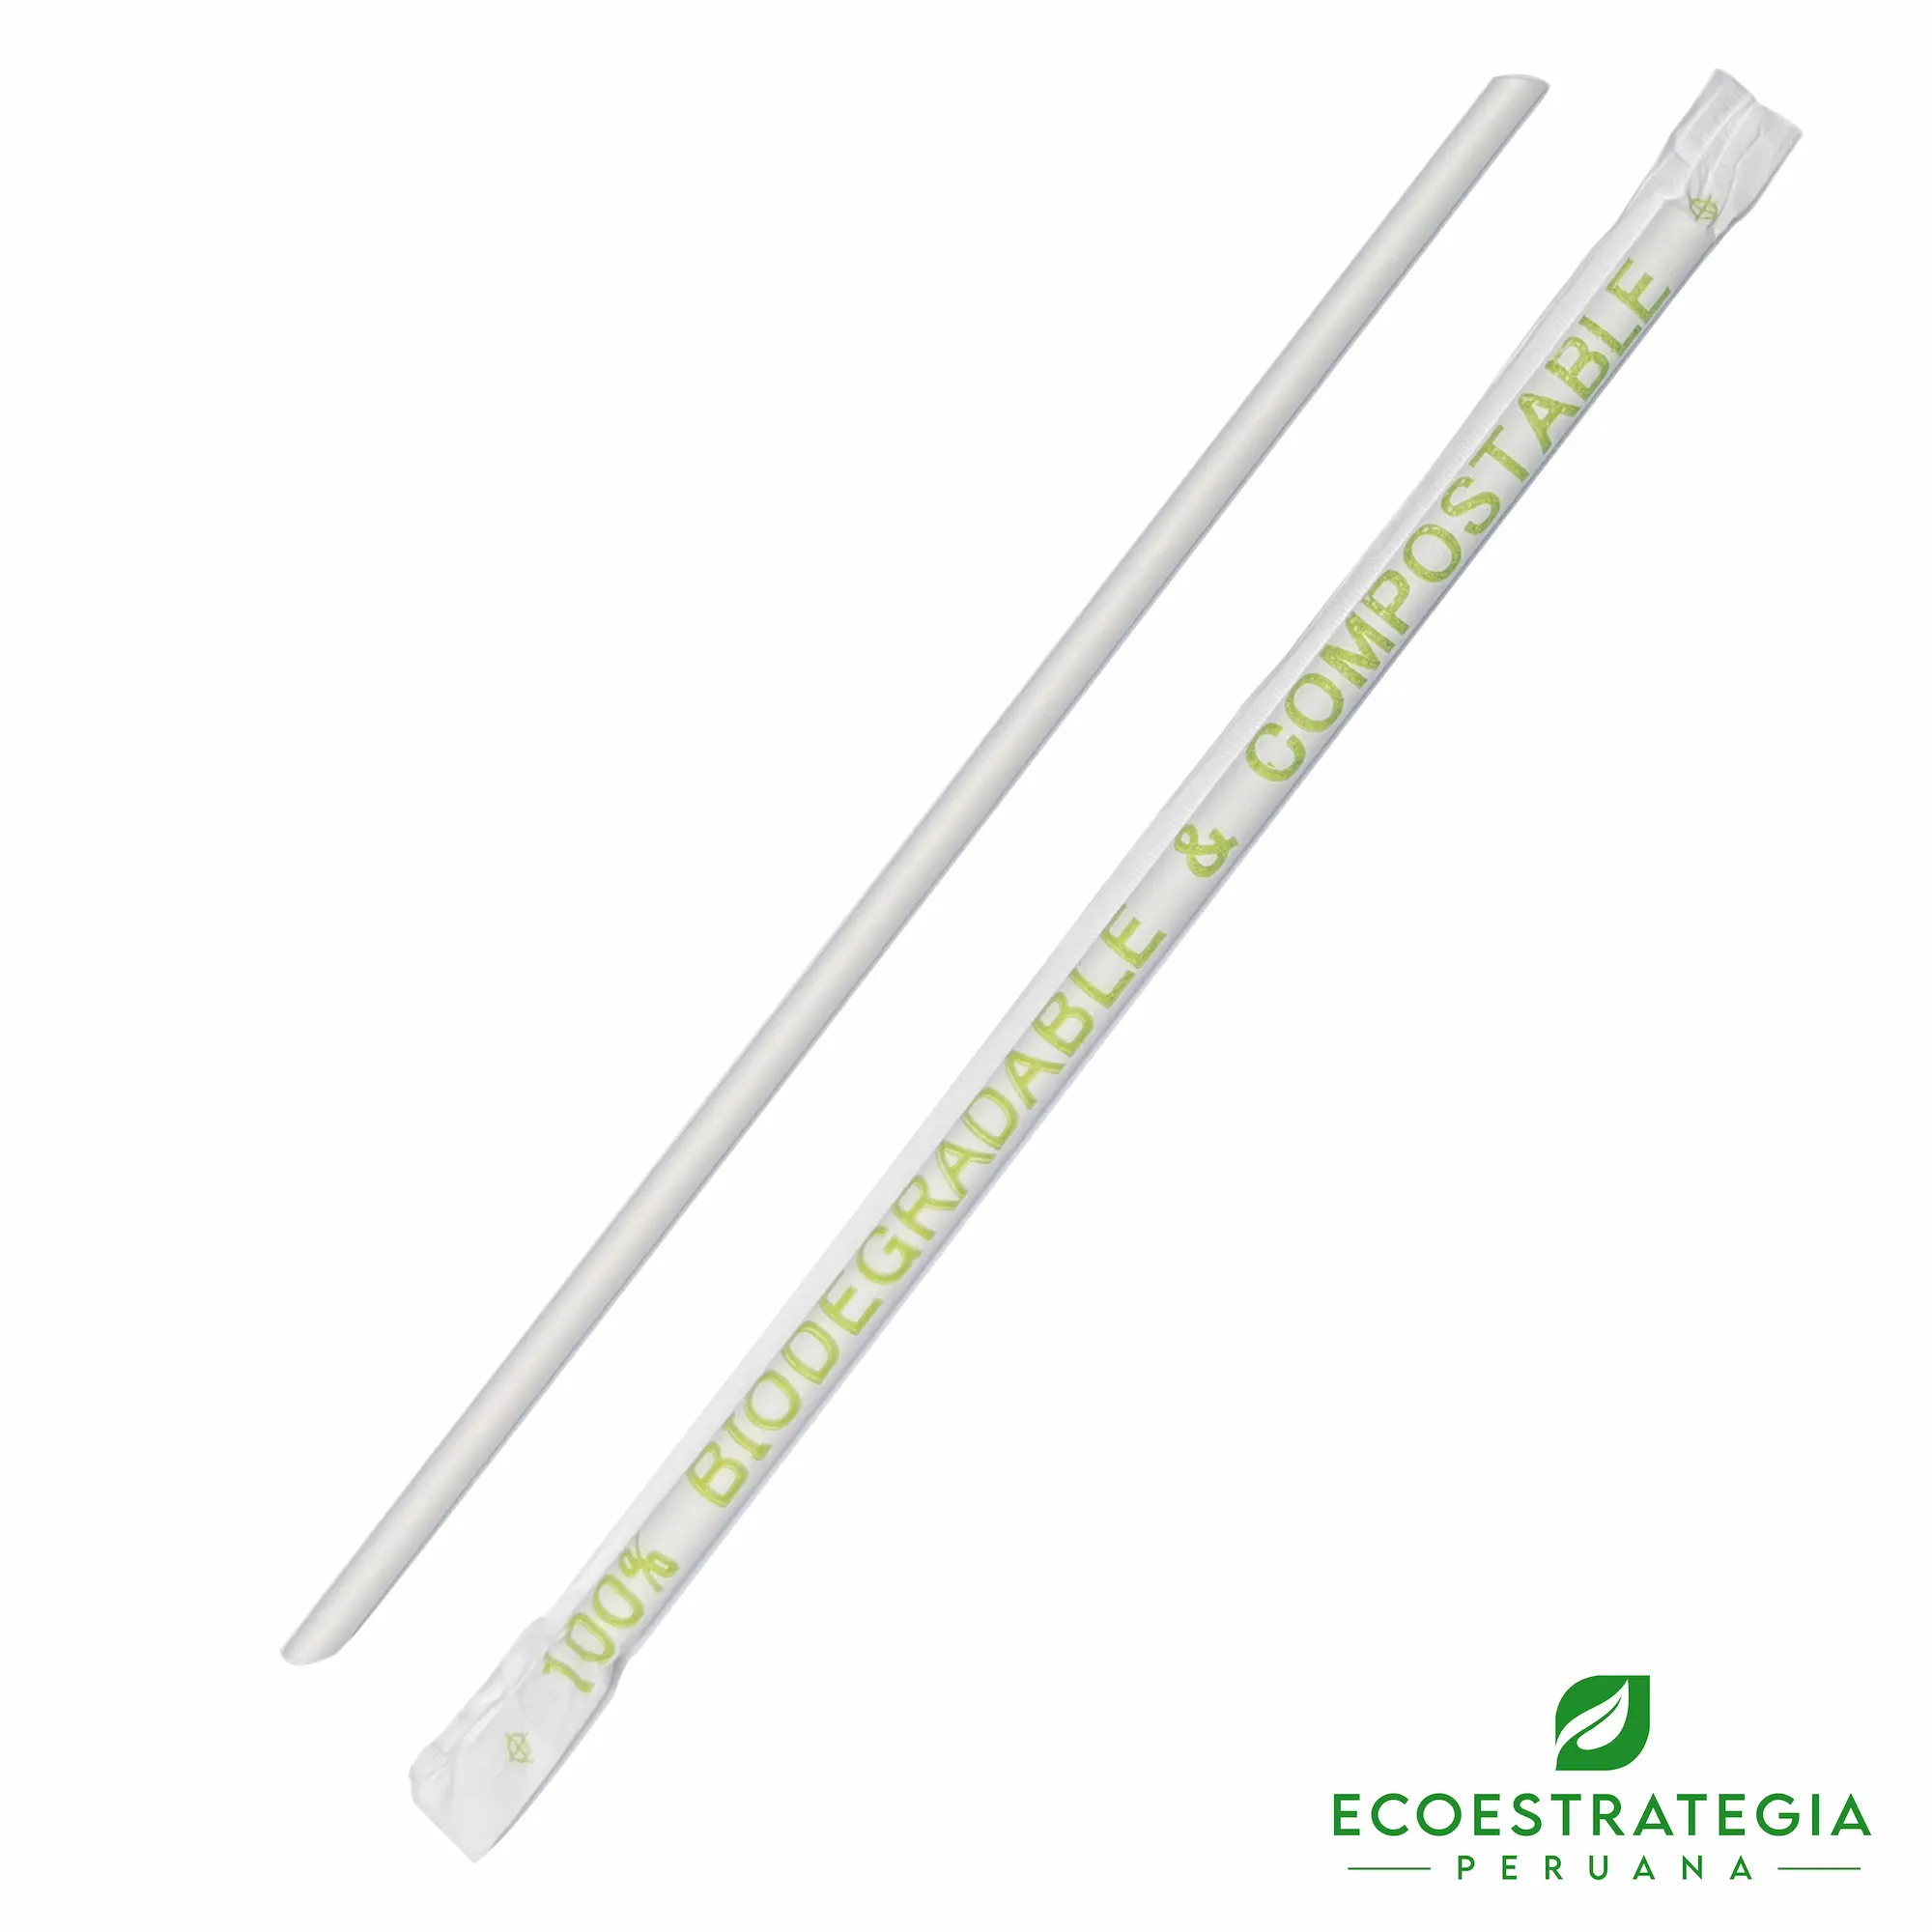 El sorbete biodegadable 6mm EP-ER06 es también conocido como cañita biodegradable de 6mm, sorbete biodegradable de papel, sorbete 6 mm, sorbete biodegradable, sorbete compostable, sorbete de papel, sorbete 100% biodegradable y compostable, sorbete bidoegradable transparente estándar 7.75, sorbete transparente 20 cms, cañitas biodegradables, sorbetes comestibles, sorbetes precio, sorbetes comestibles pdf, sorbetes biodegradable Perú, sorbete, sorbetes sueltos, sorbetes compostables con estuche, sorbete biodegradable 20 cm, fabricante de sorbetes biodegradables, distribuidor de sorbetes de papel, mayorista de sorbetes de papel